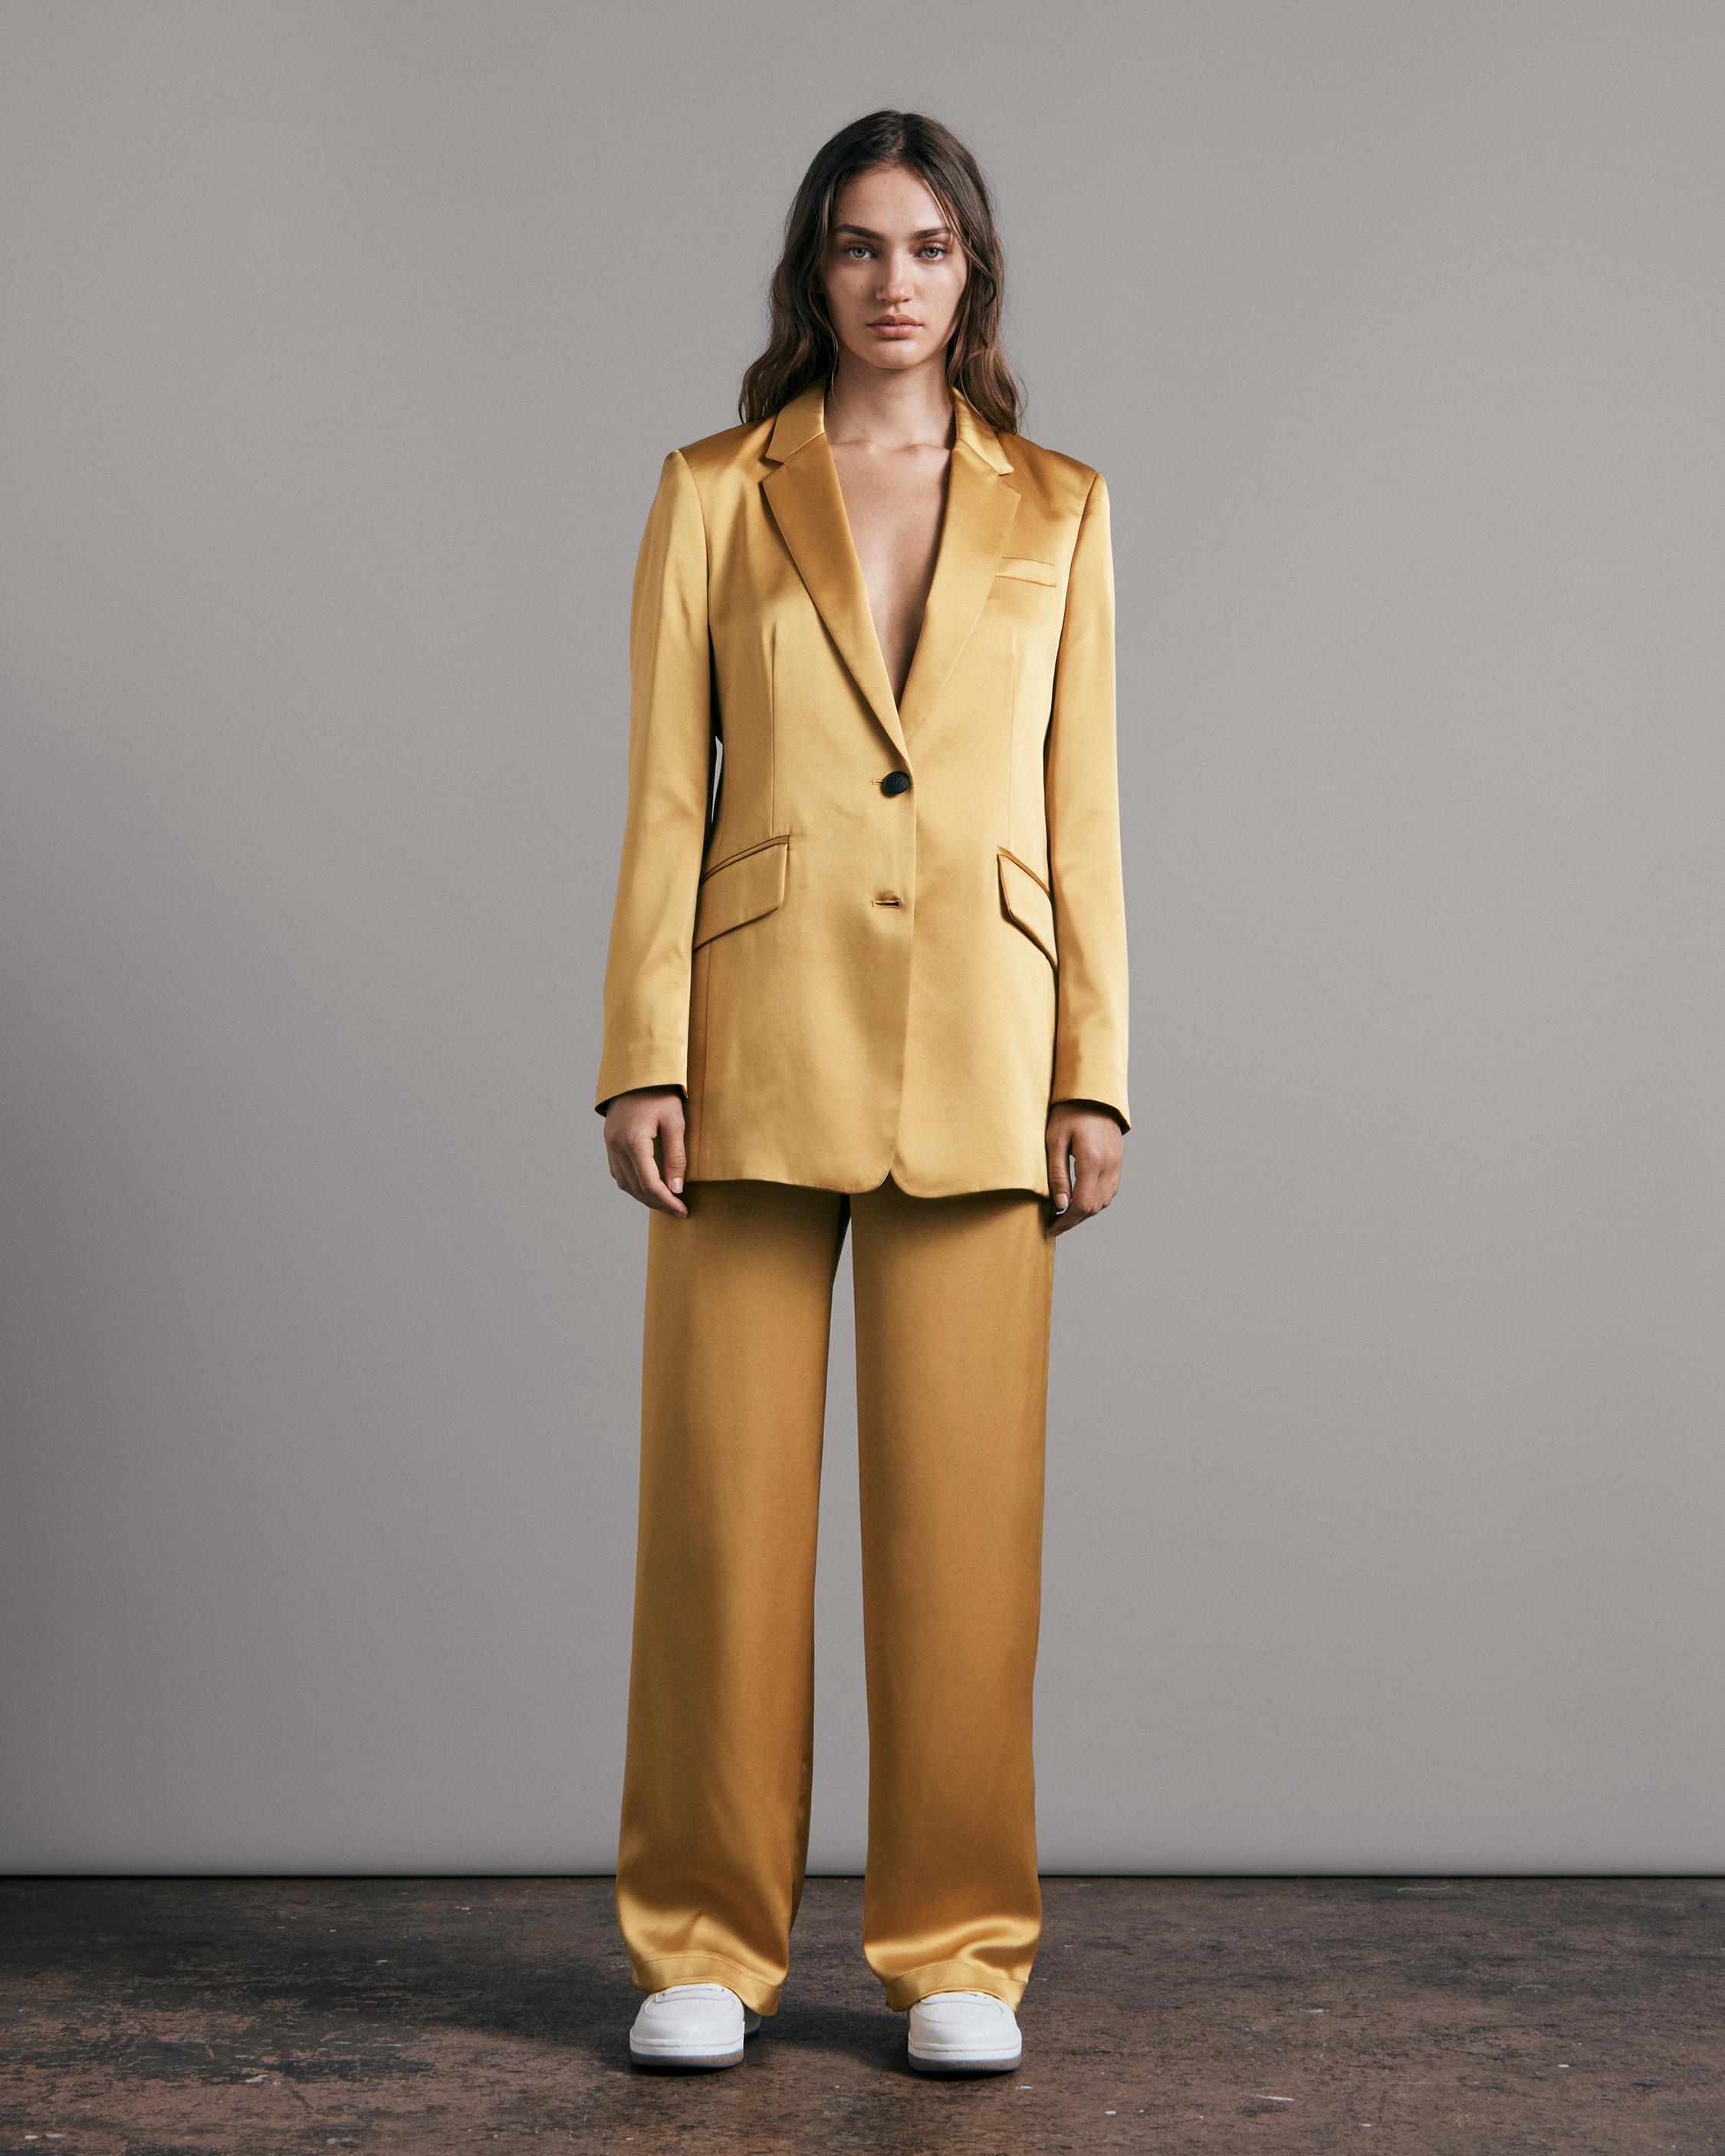 Shop Blazers for Women in Sleek, Modern Styles | rag & bone